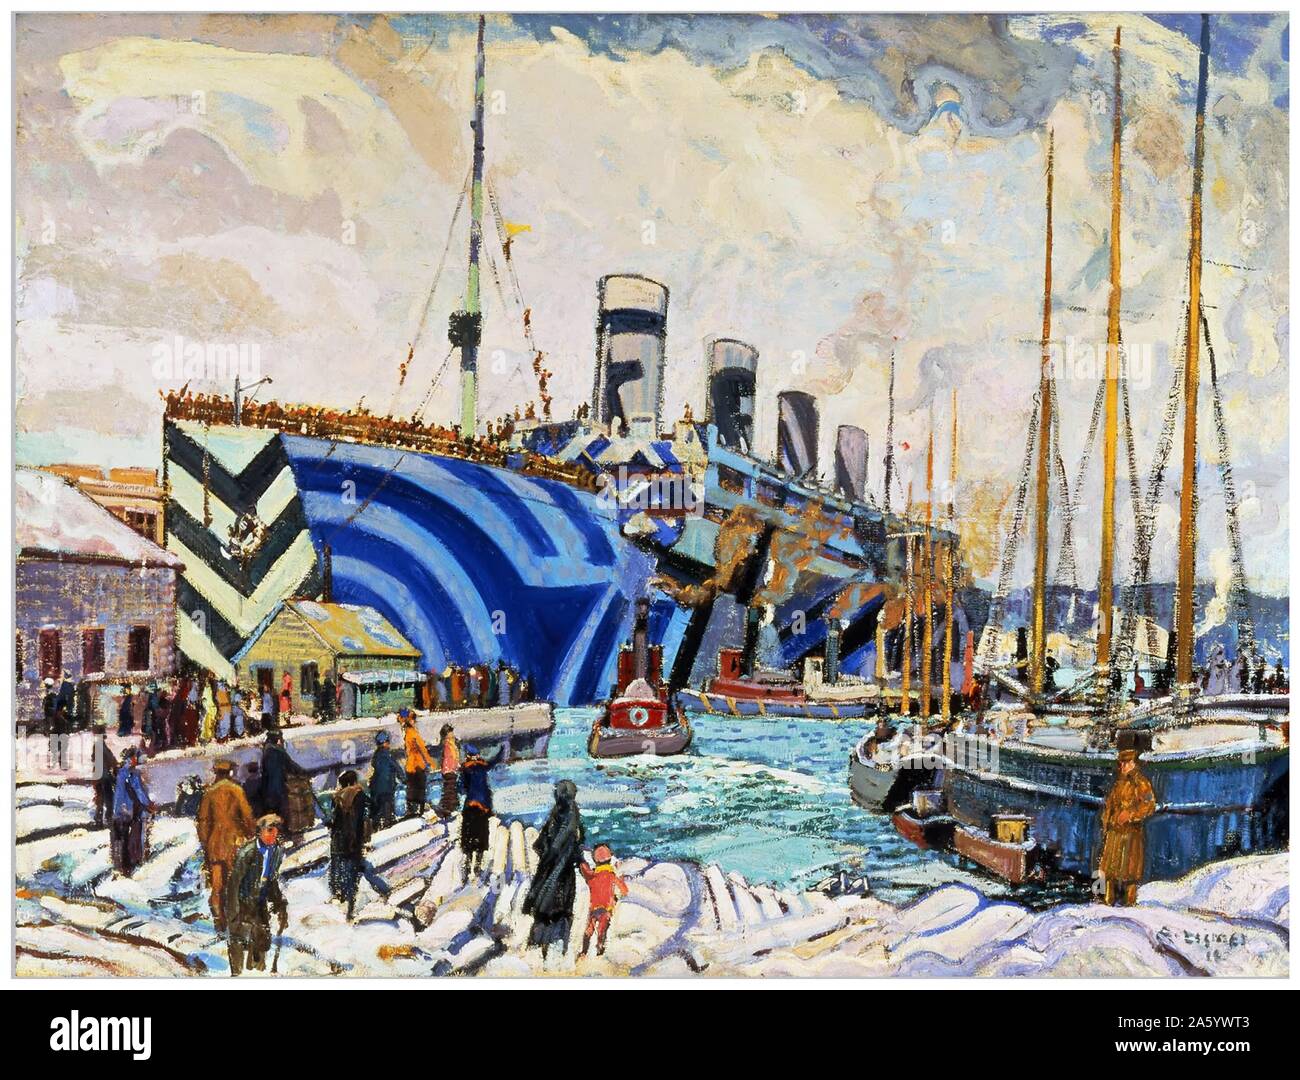 Tableau représentant le HMS retour olympique avec les soldats d'Arthur Lismer (1885-1969) peintre canadien-anglais et membre du Groupe des sept. Datée 1945 Banque D'Images